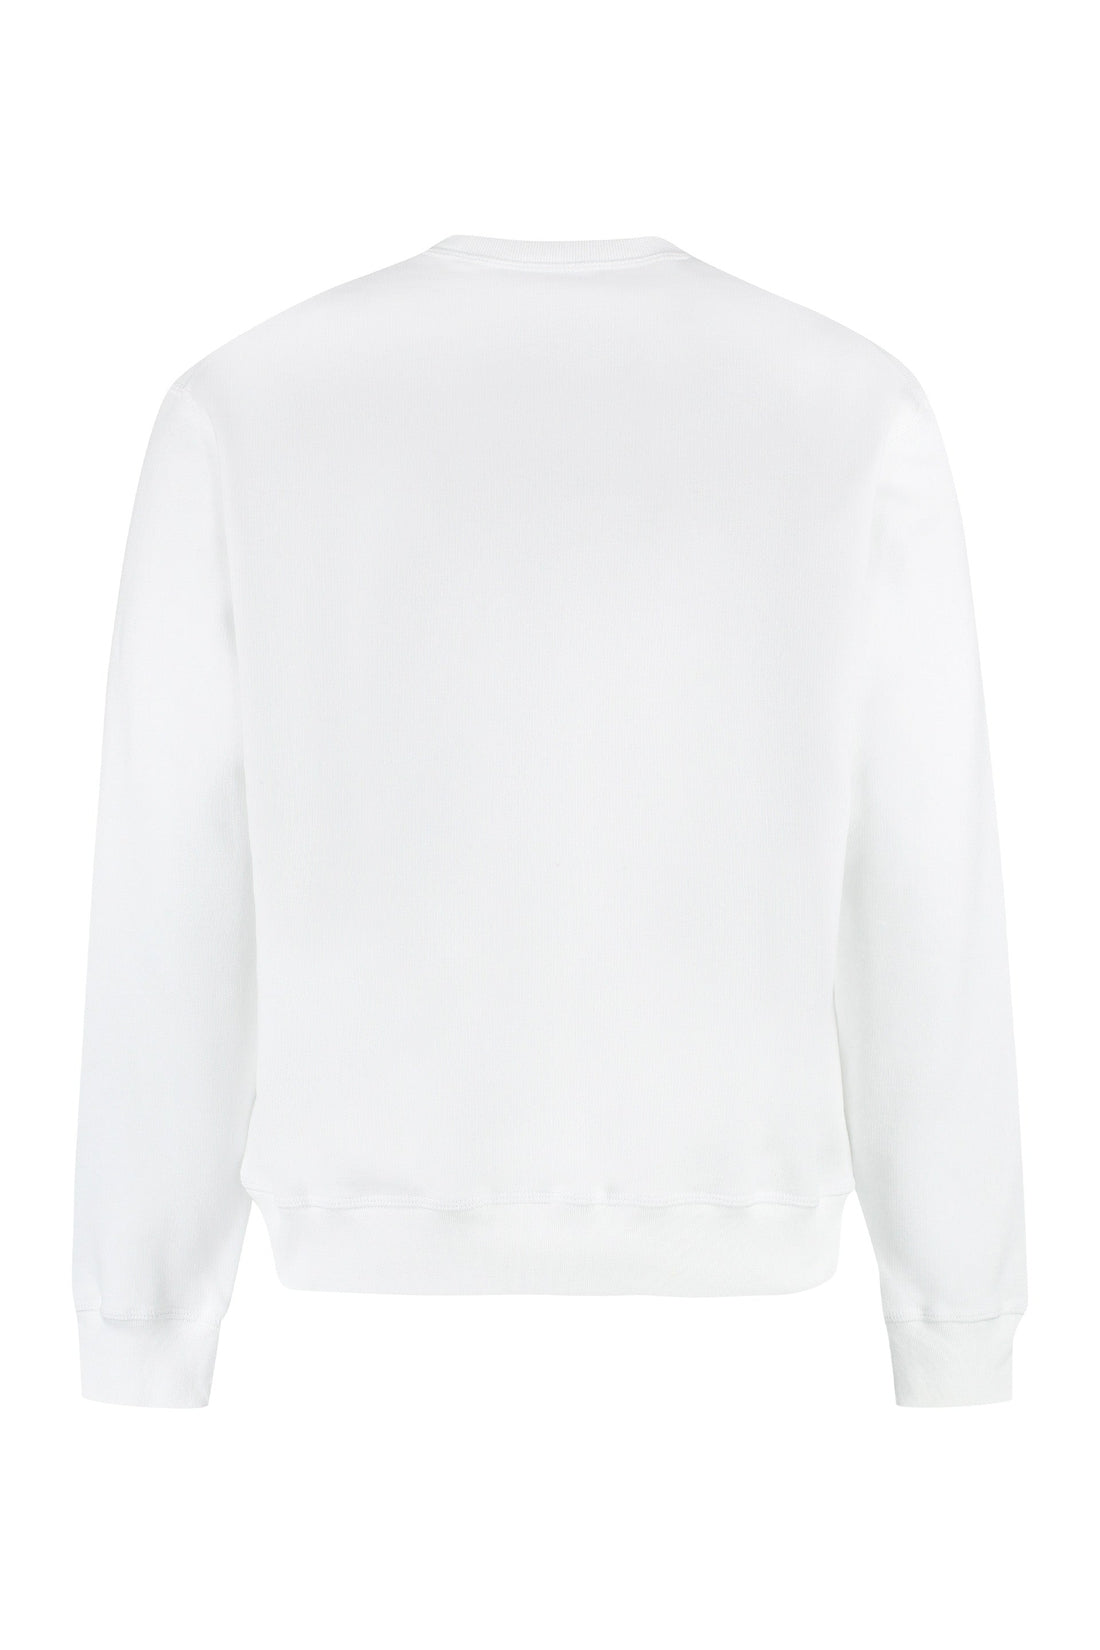 Dsquared2-OUTLET-SALE-Cotton crew-neck sweatshirt with logo-ARCHIVIST